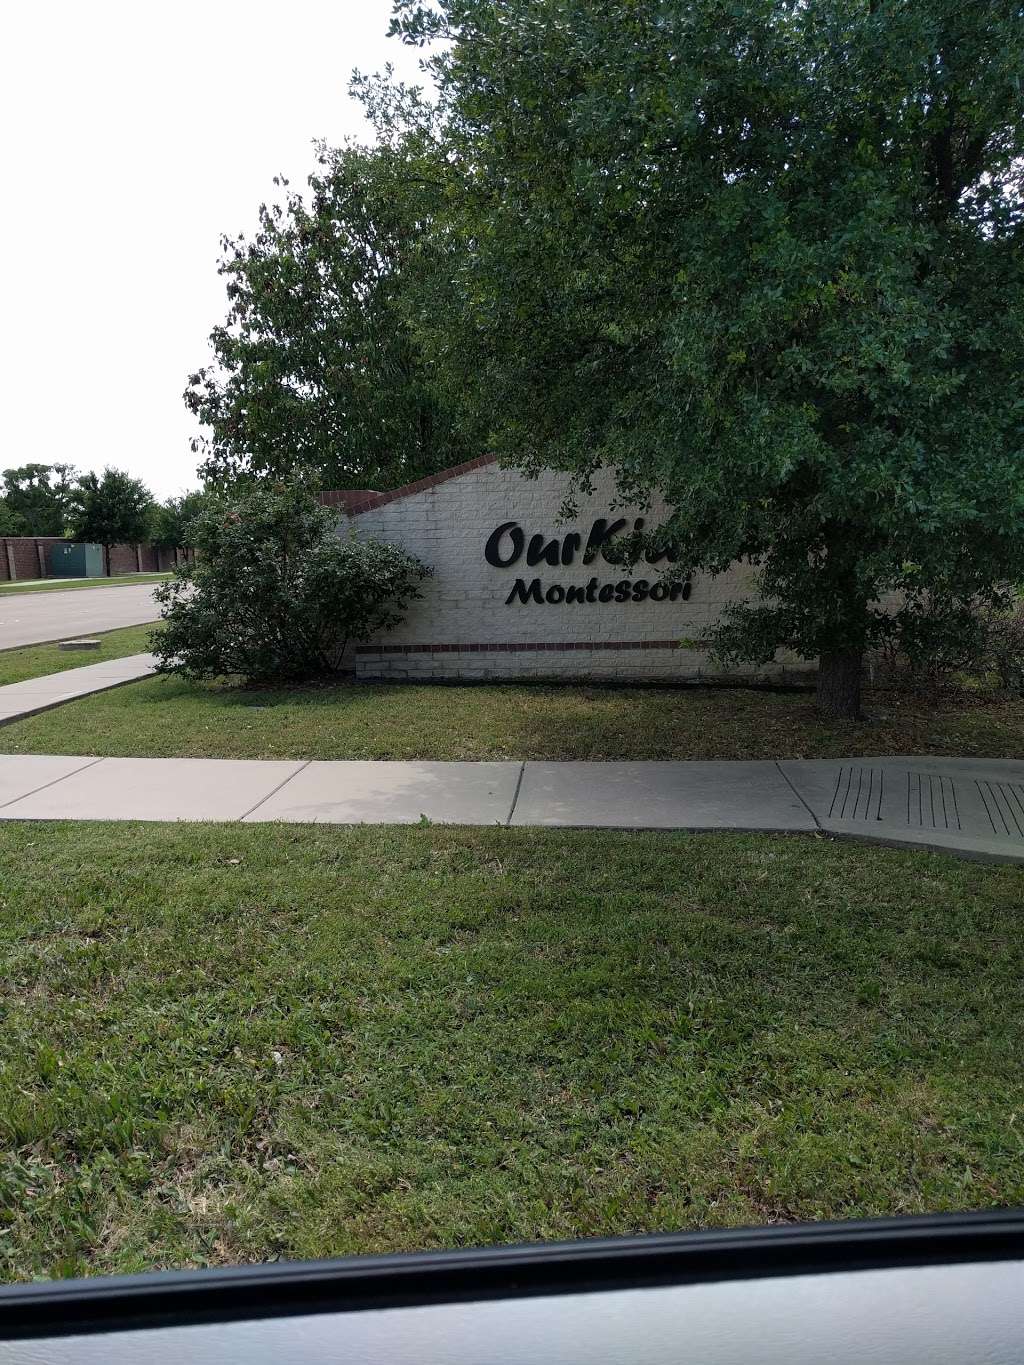 OurKids Montessori School & Child Care Center | 477 Highland Dr, Lewisville, TX 75067 | Phone: (972) 315-0337